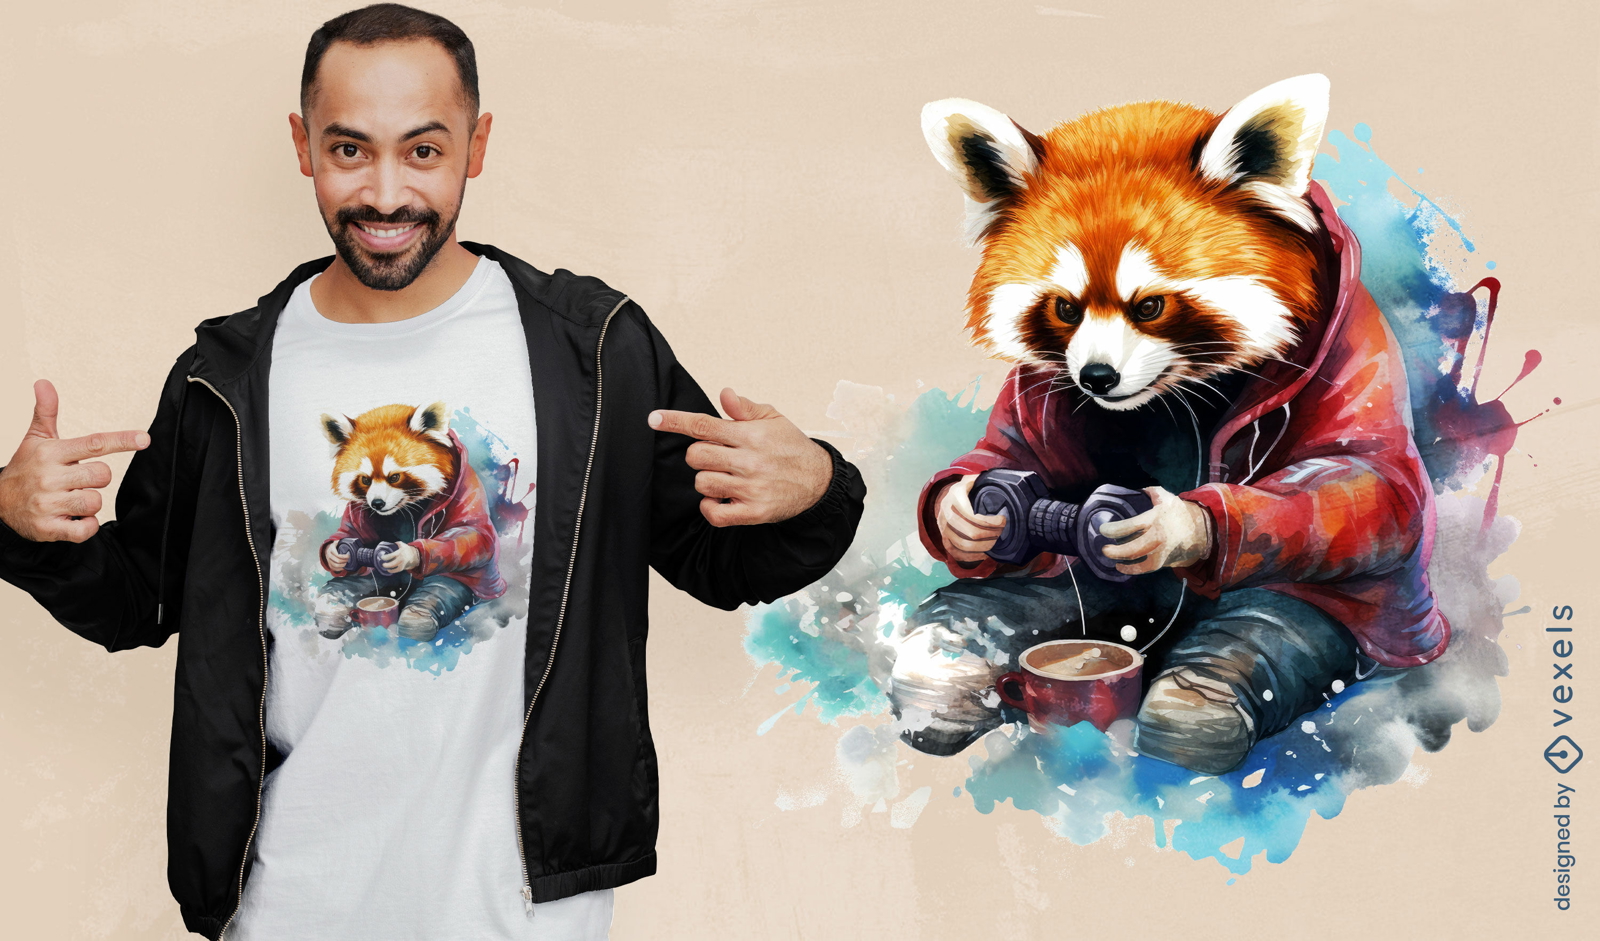 Red panda gaming t-shirt design